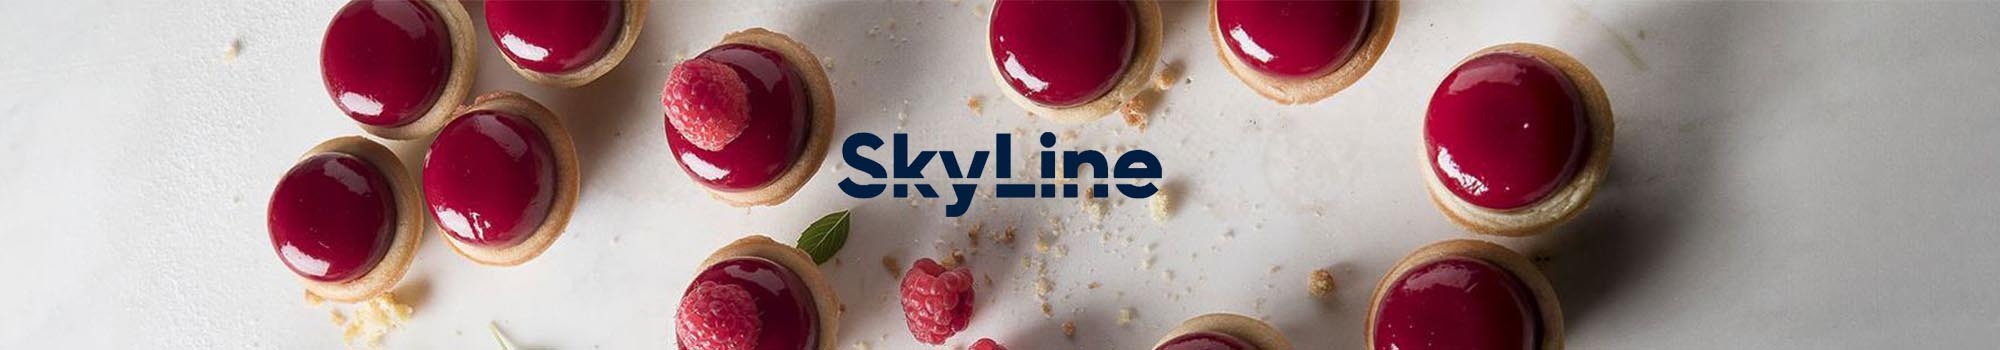 skyline-combi-oven-pastry-banner-2000x350-2